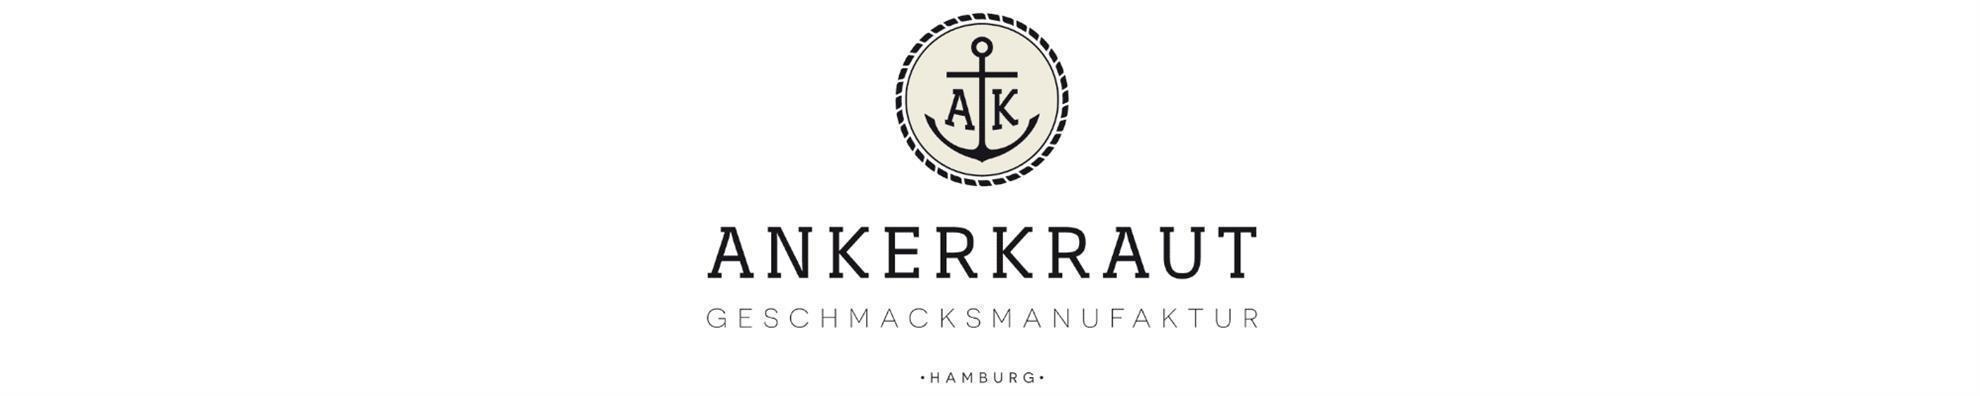 Ankerkraut - Steak & BBQ Salzflocken